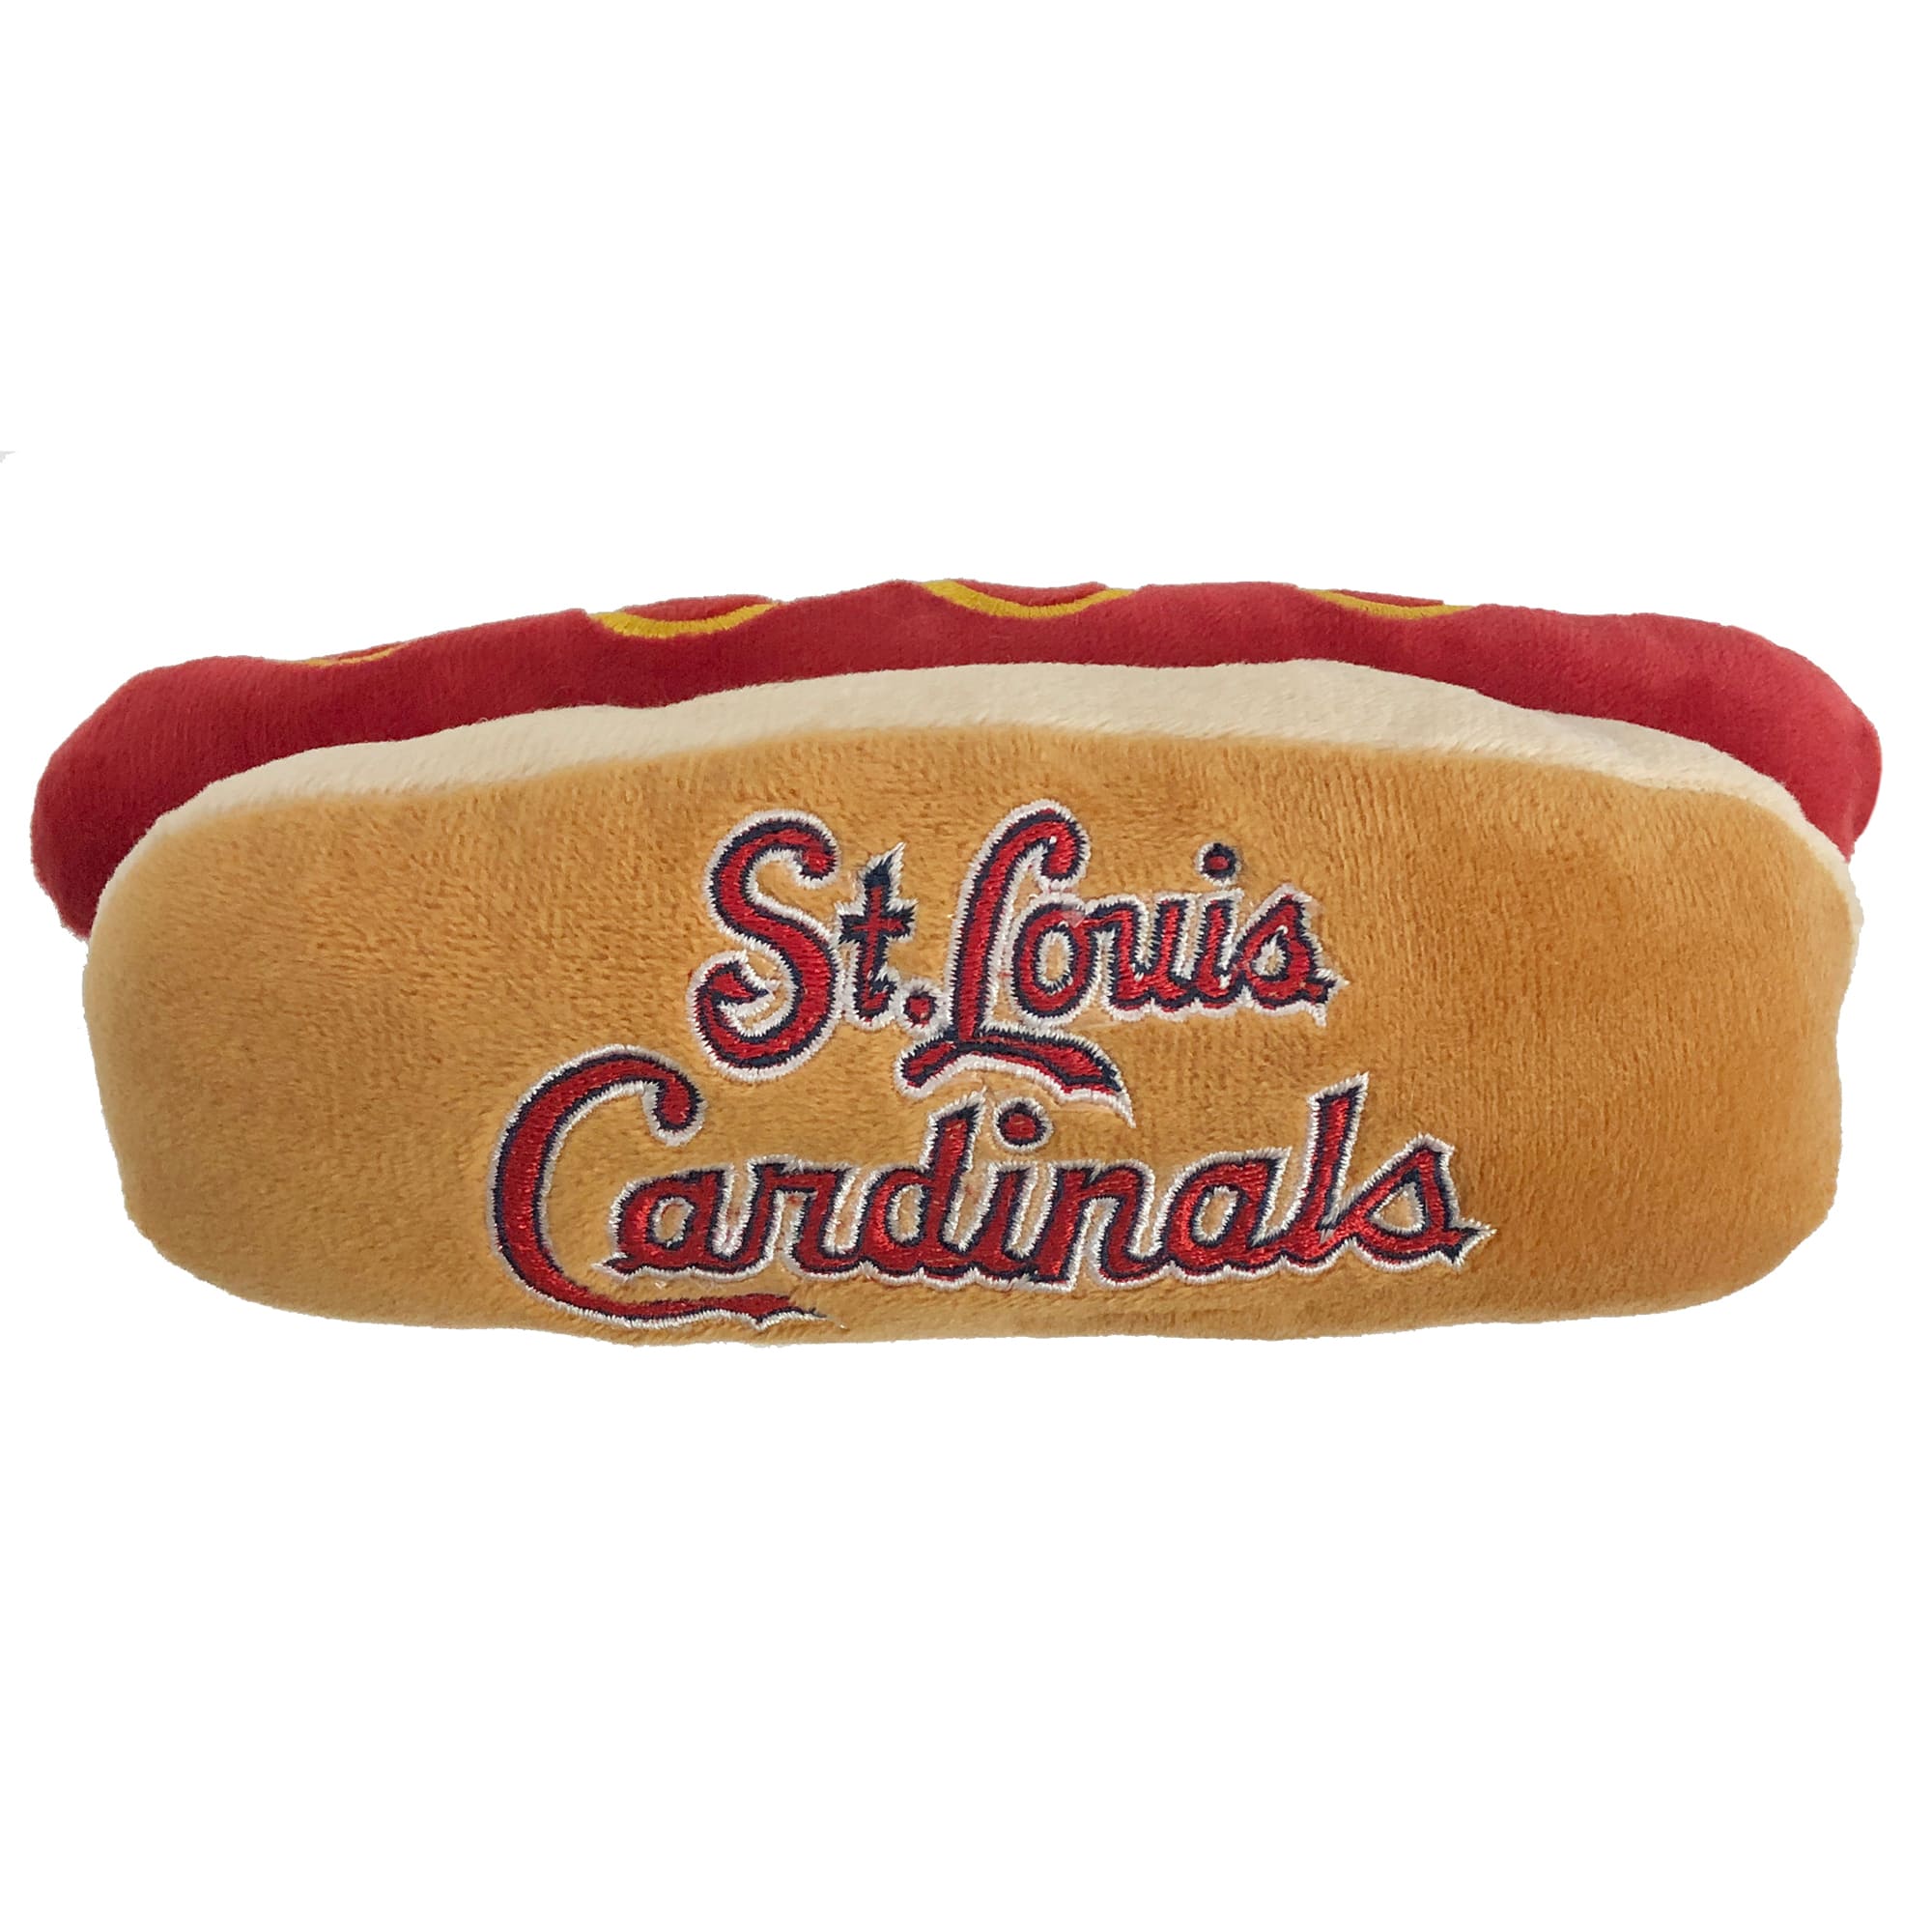 St Louis Cardinals Dog Collar Medium